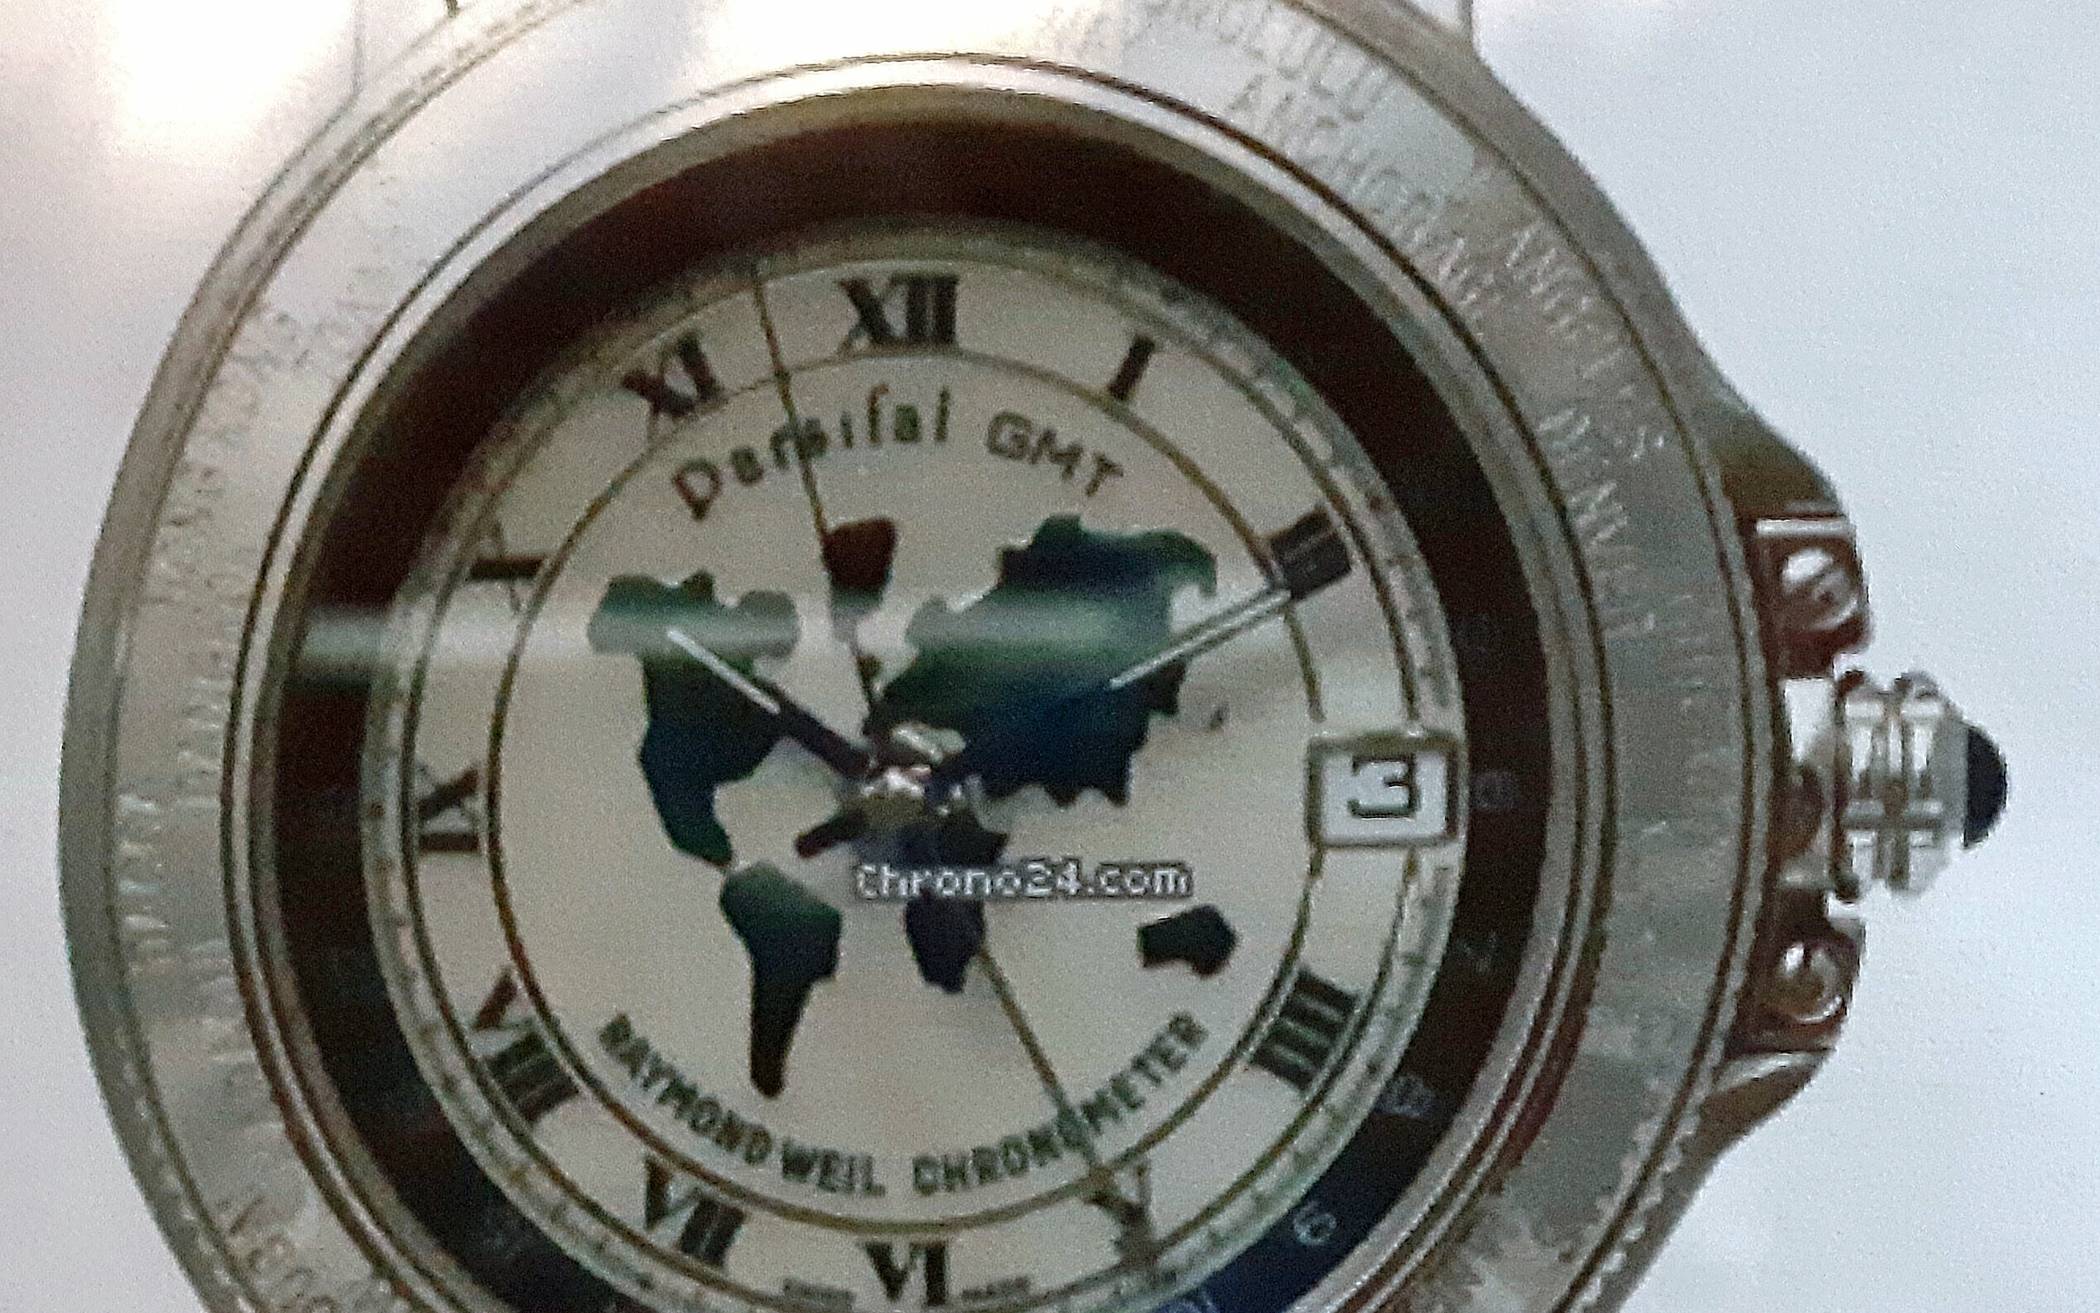 Bild der gestohlenen "Raymond Weil" Uhr.